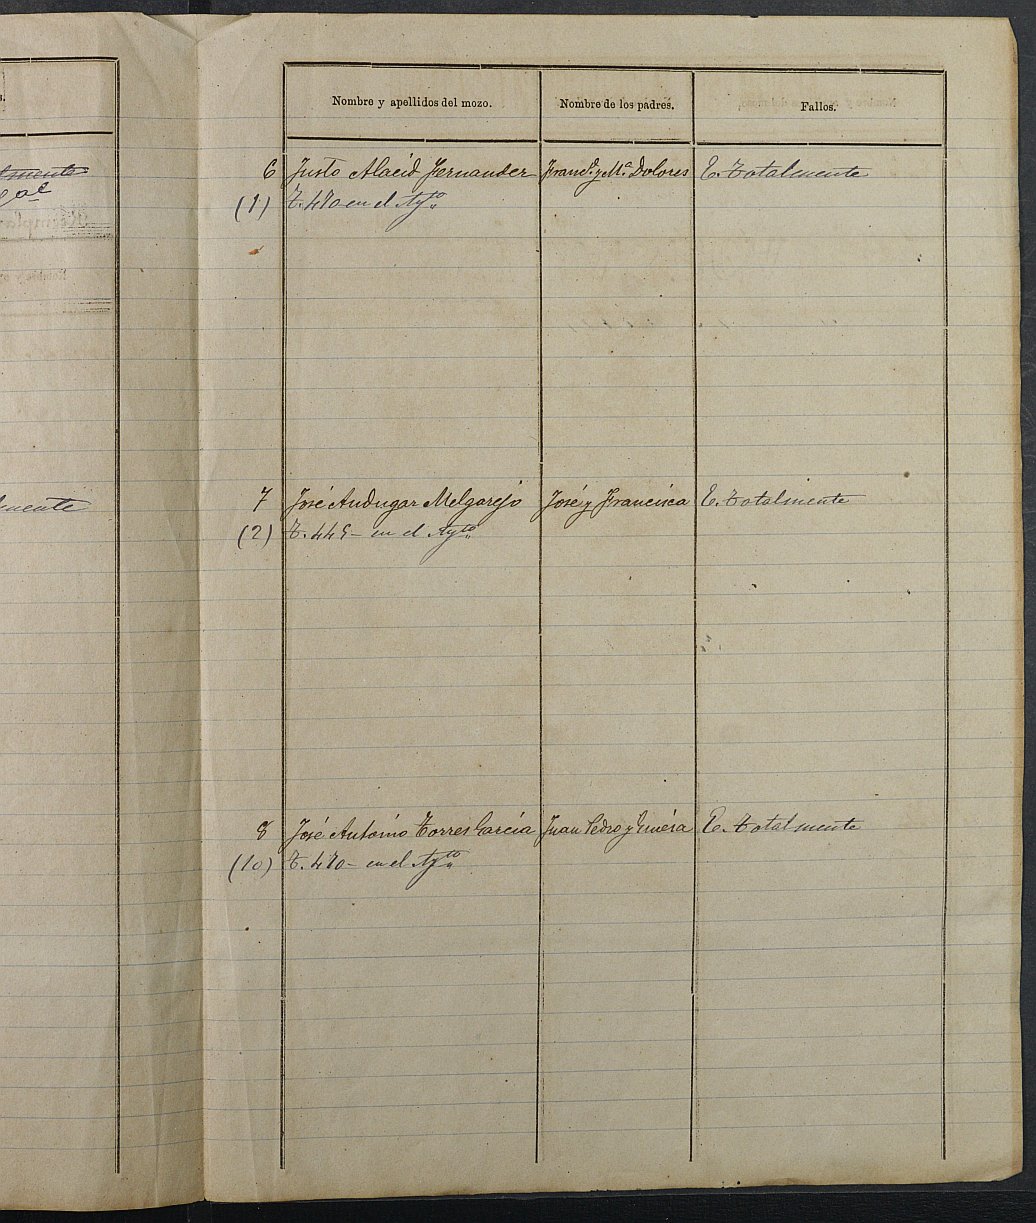 Relación de individuos declarados soldados e ingresados en Caja del Ayuntamiento de Lorquí de 1894.